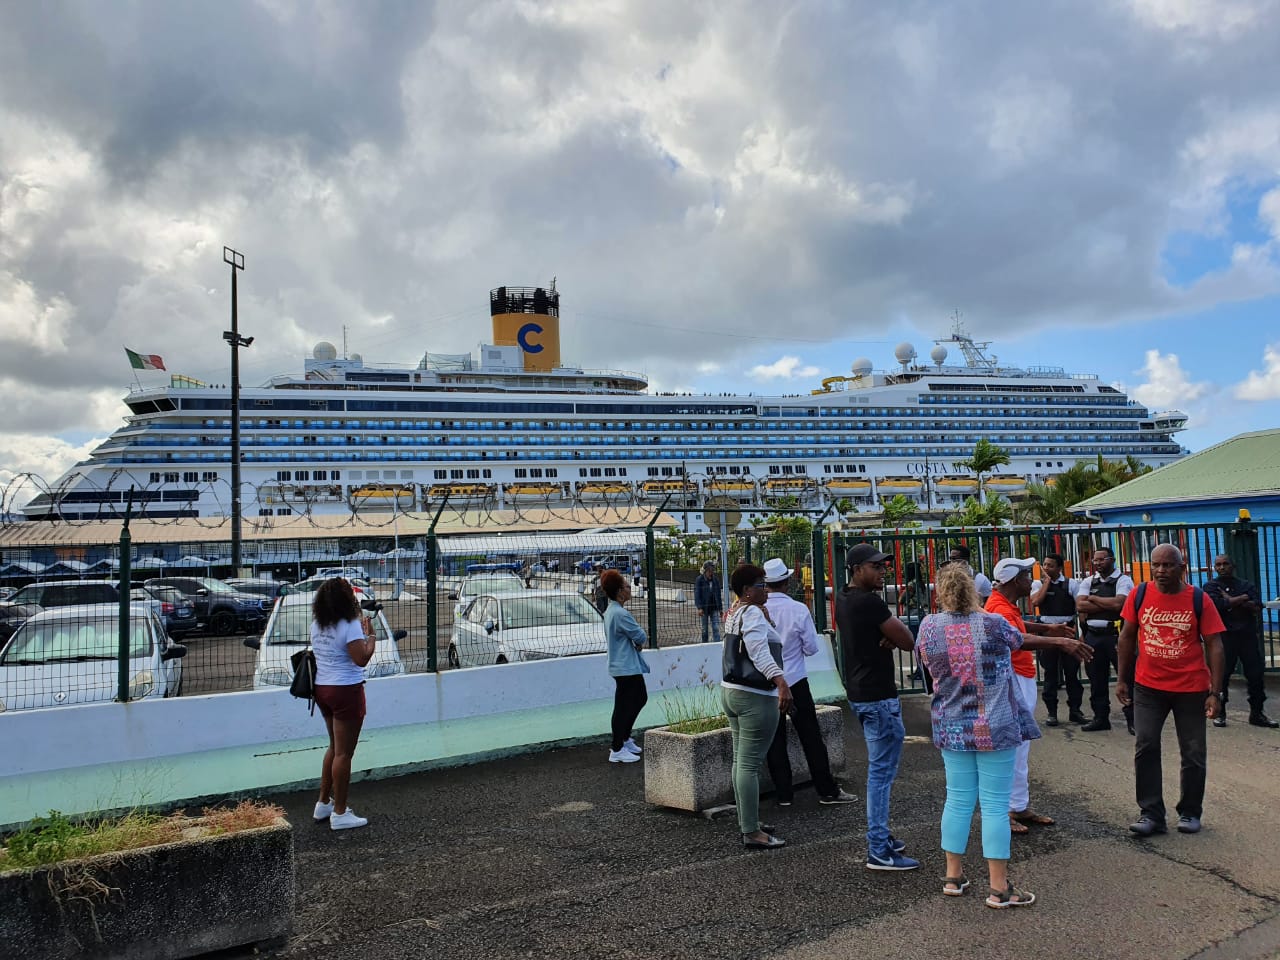     Après contrôle des autorités sanitaires, les passagers du Costa Magica descendent du navire

